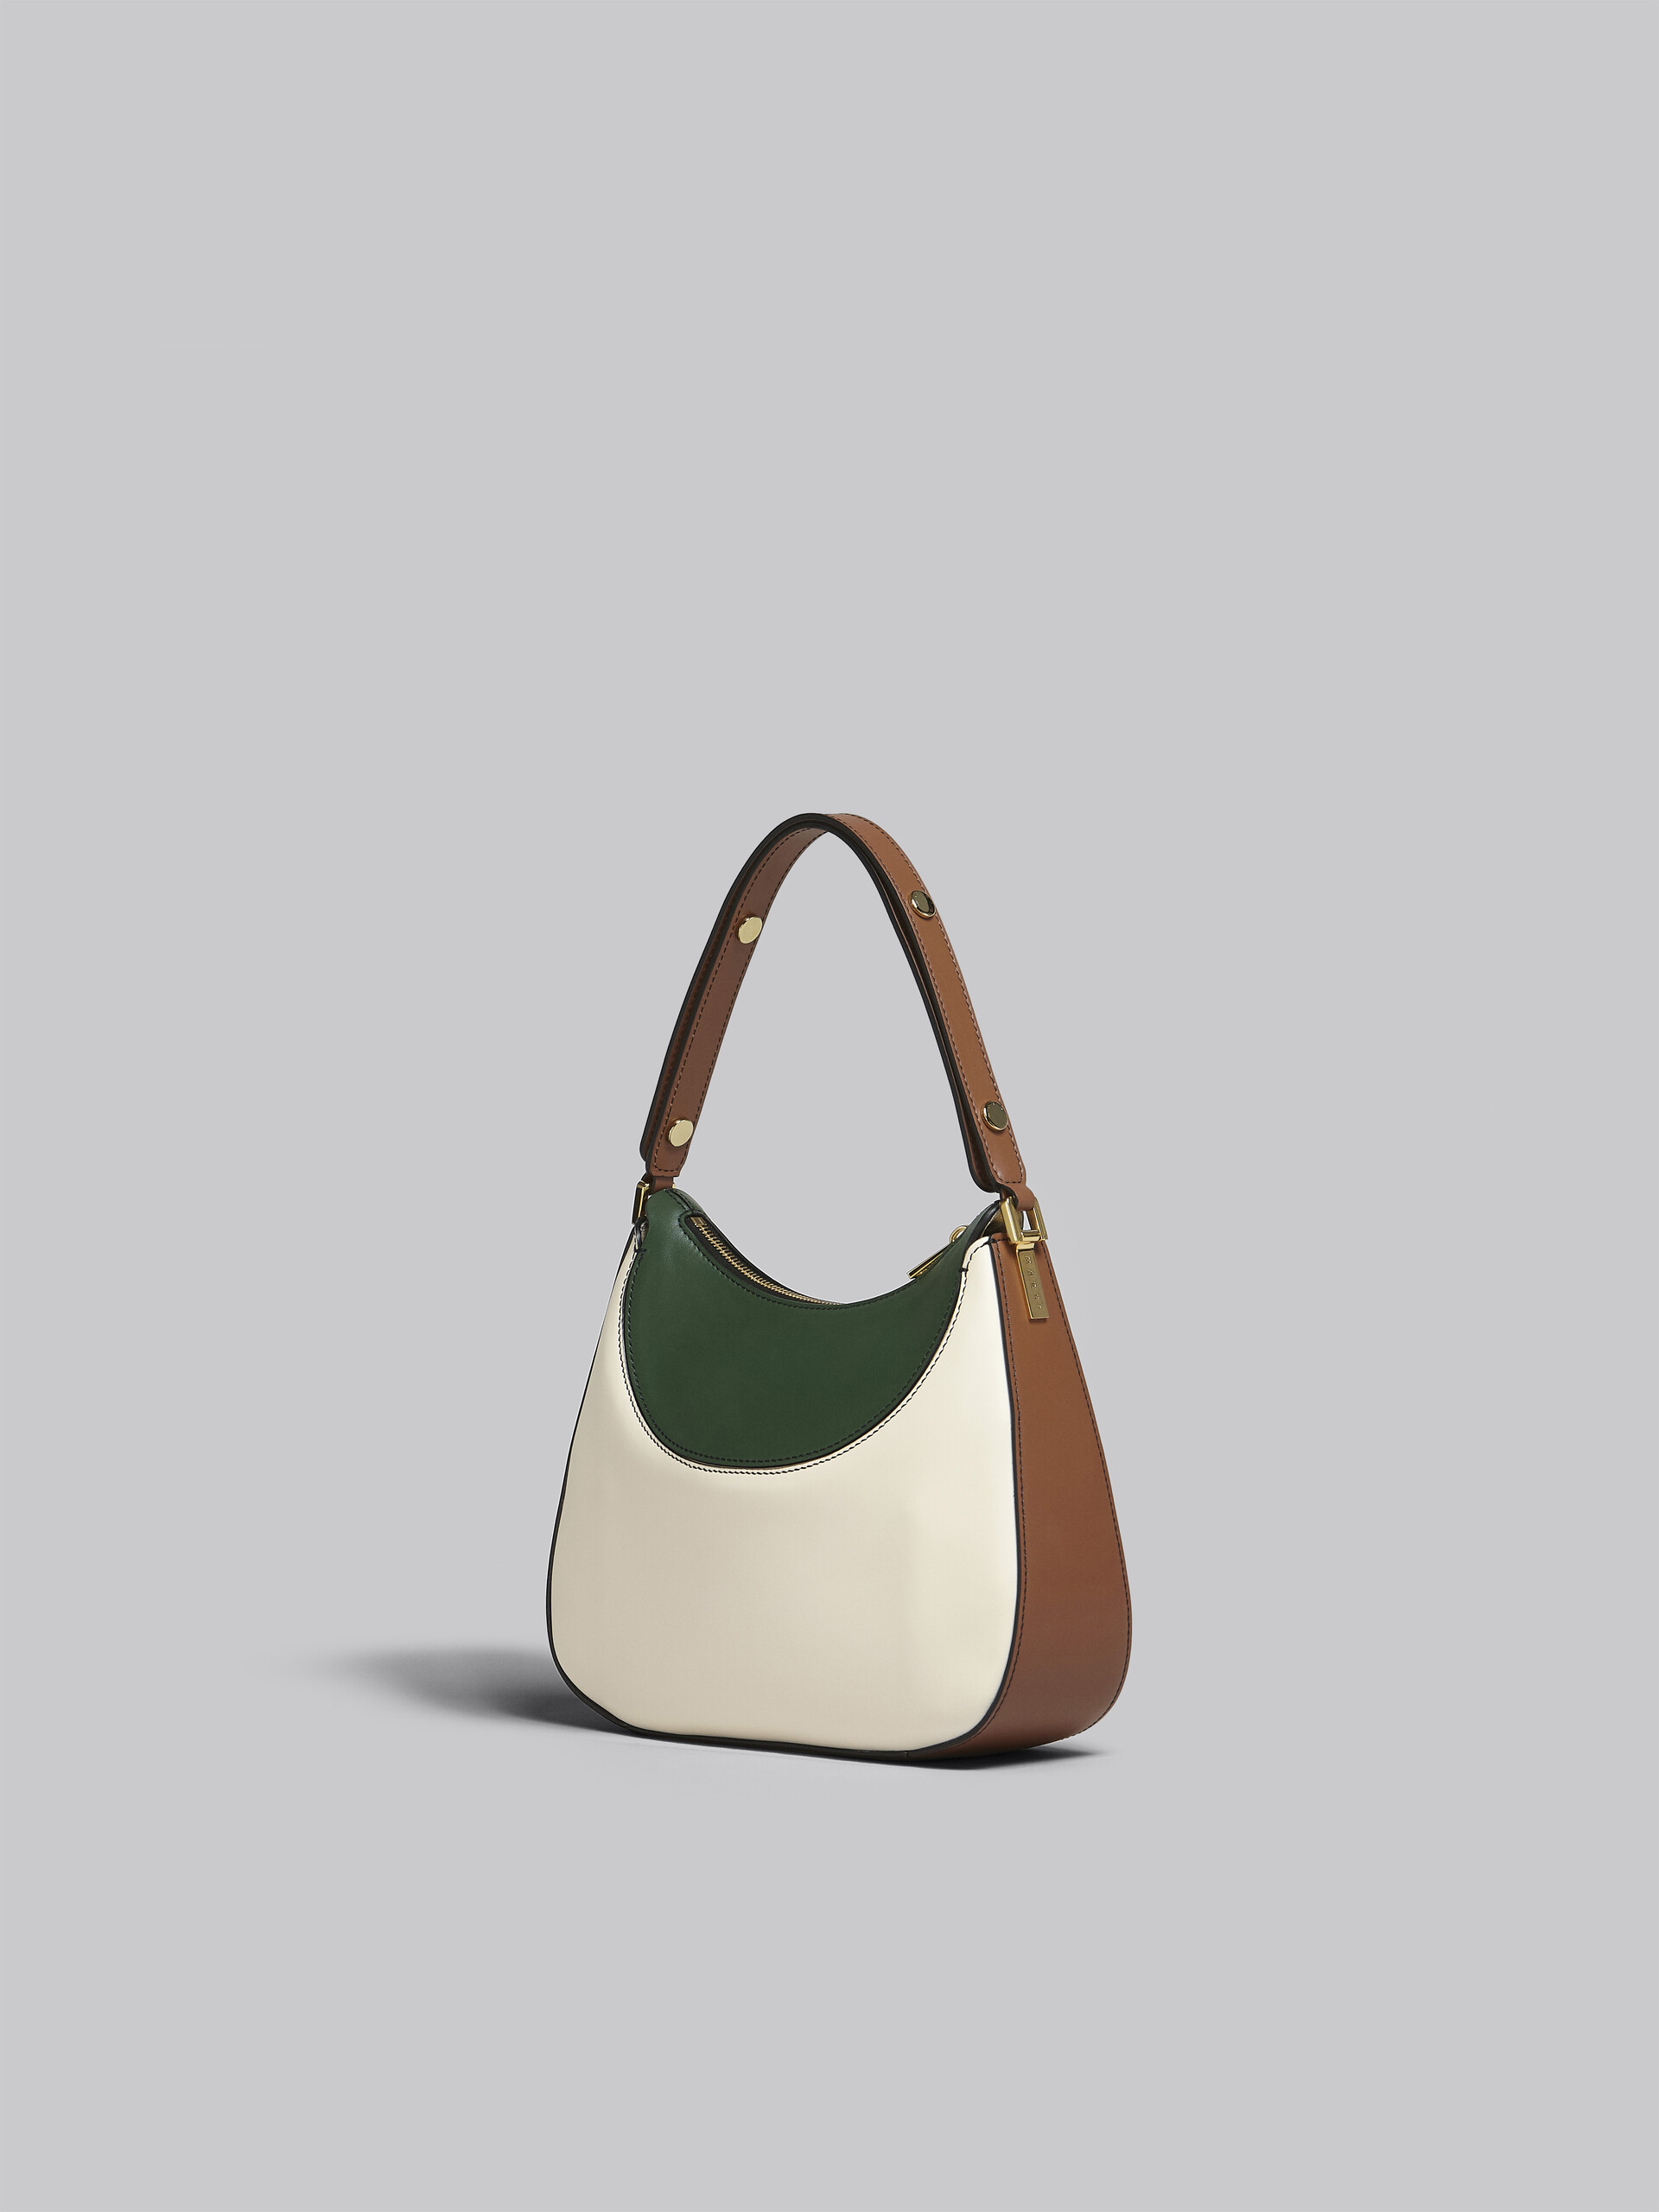 Petit sac Milano en cuir blanc, marron et vert - Sacs à main - Image 3